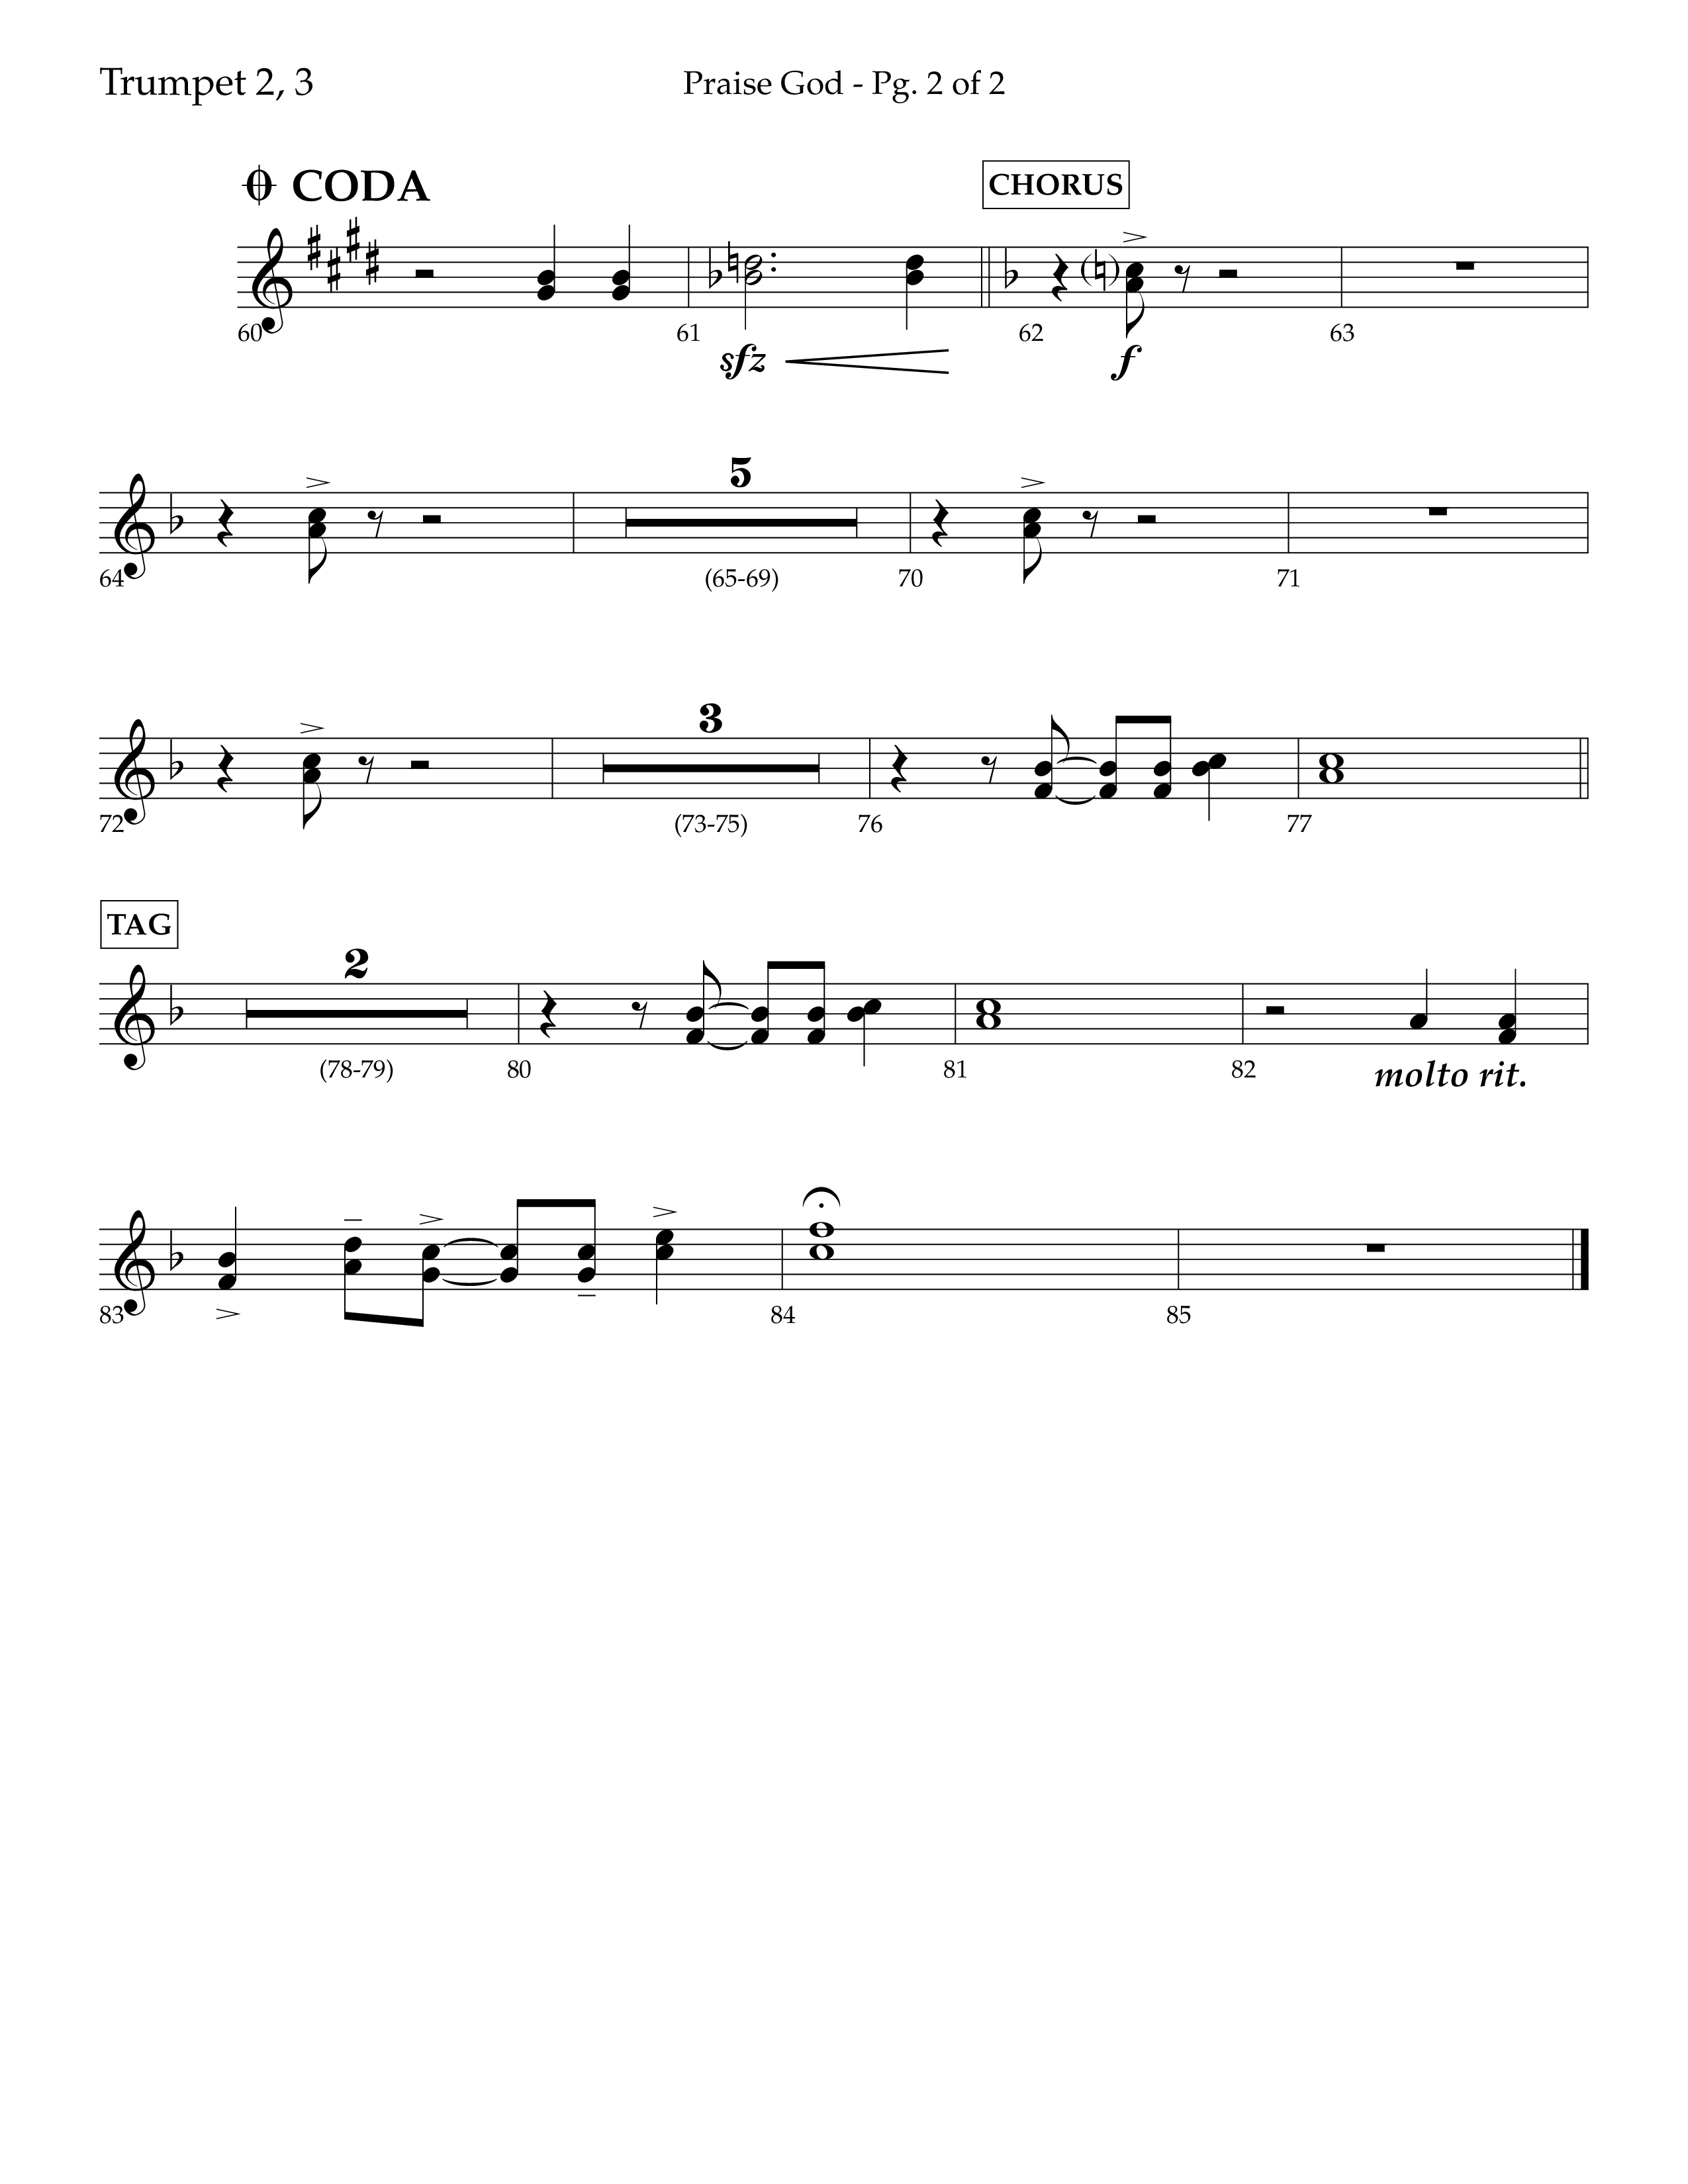 Praise God (Choral Anthem SATB) Trumpet 2/3 (Lifeway Choral / Arr. Dennis Allen)